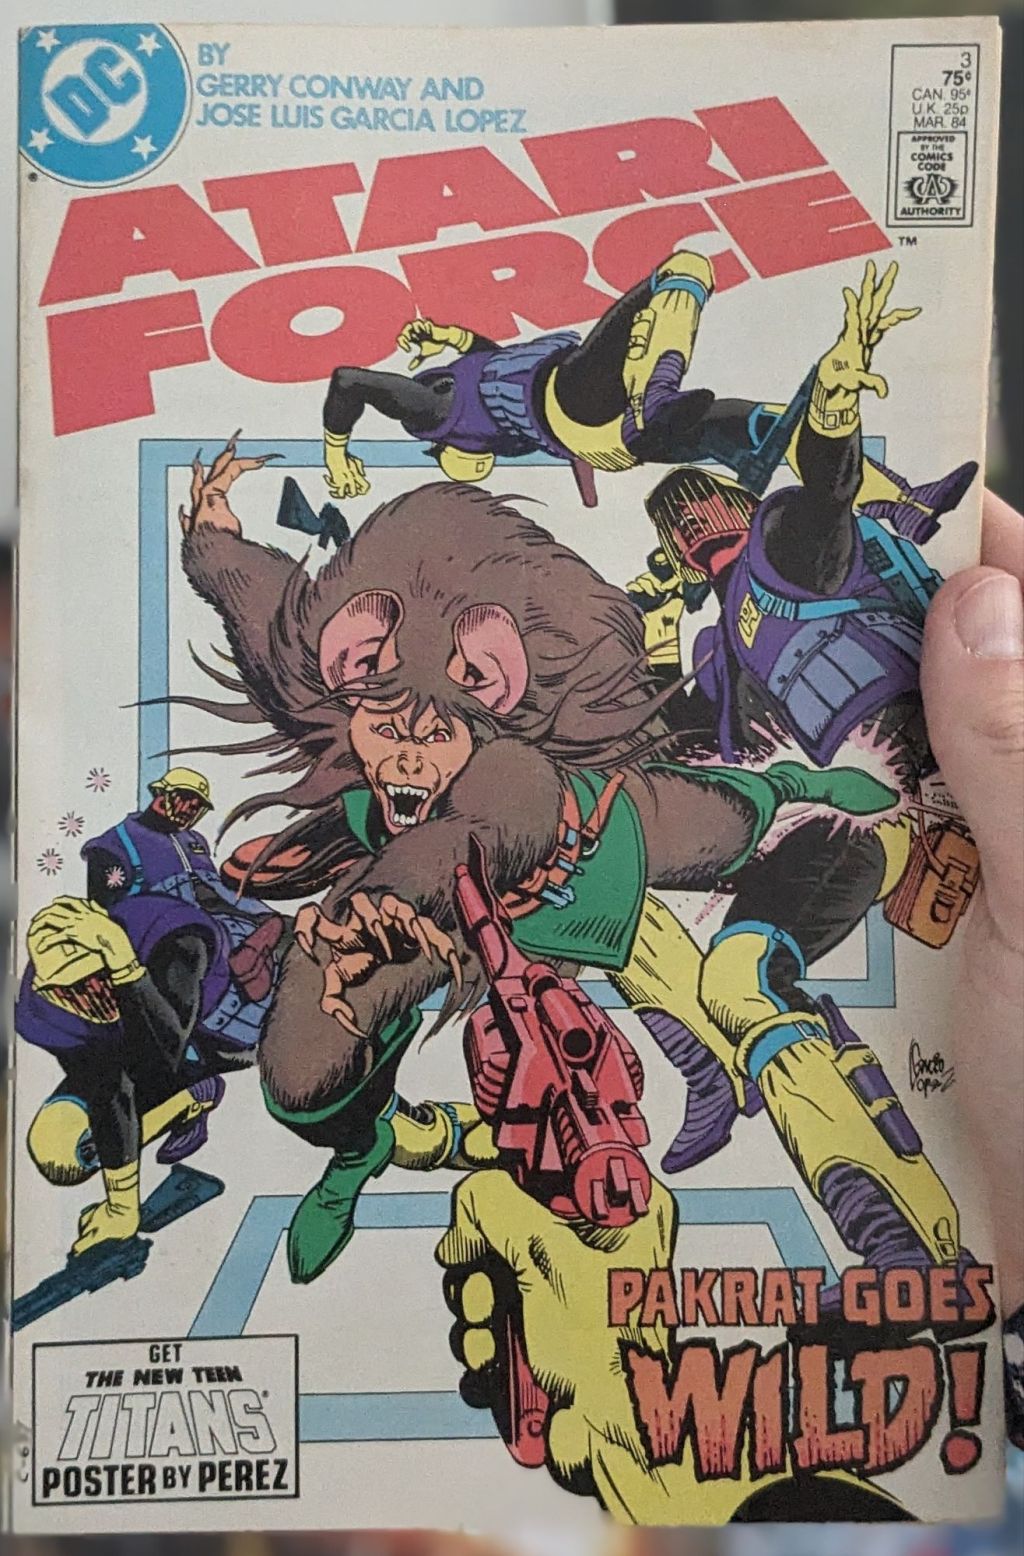 Comic Book Review: Atari Force #3 (1984)